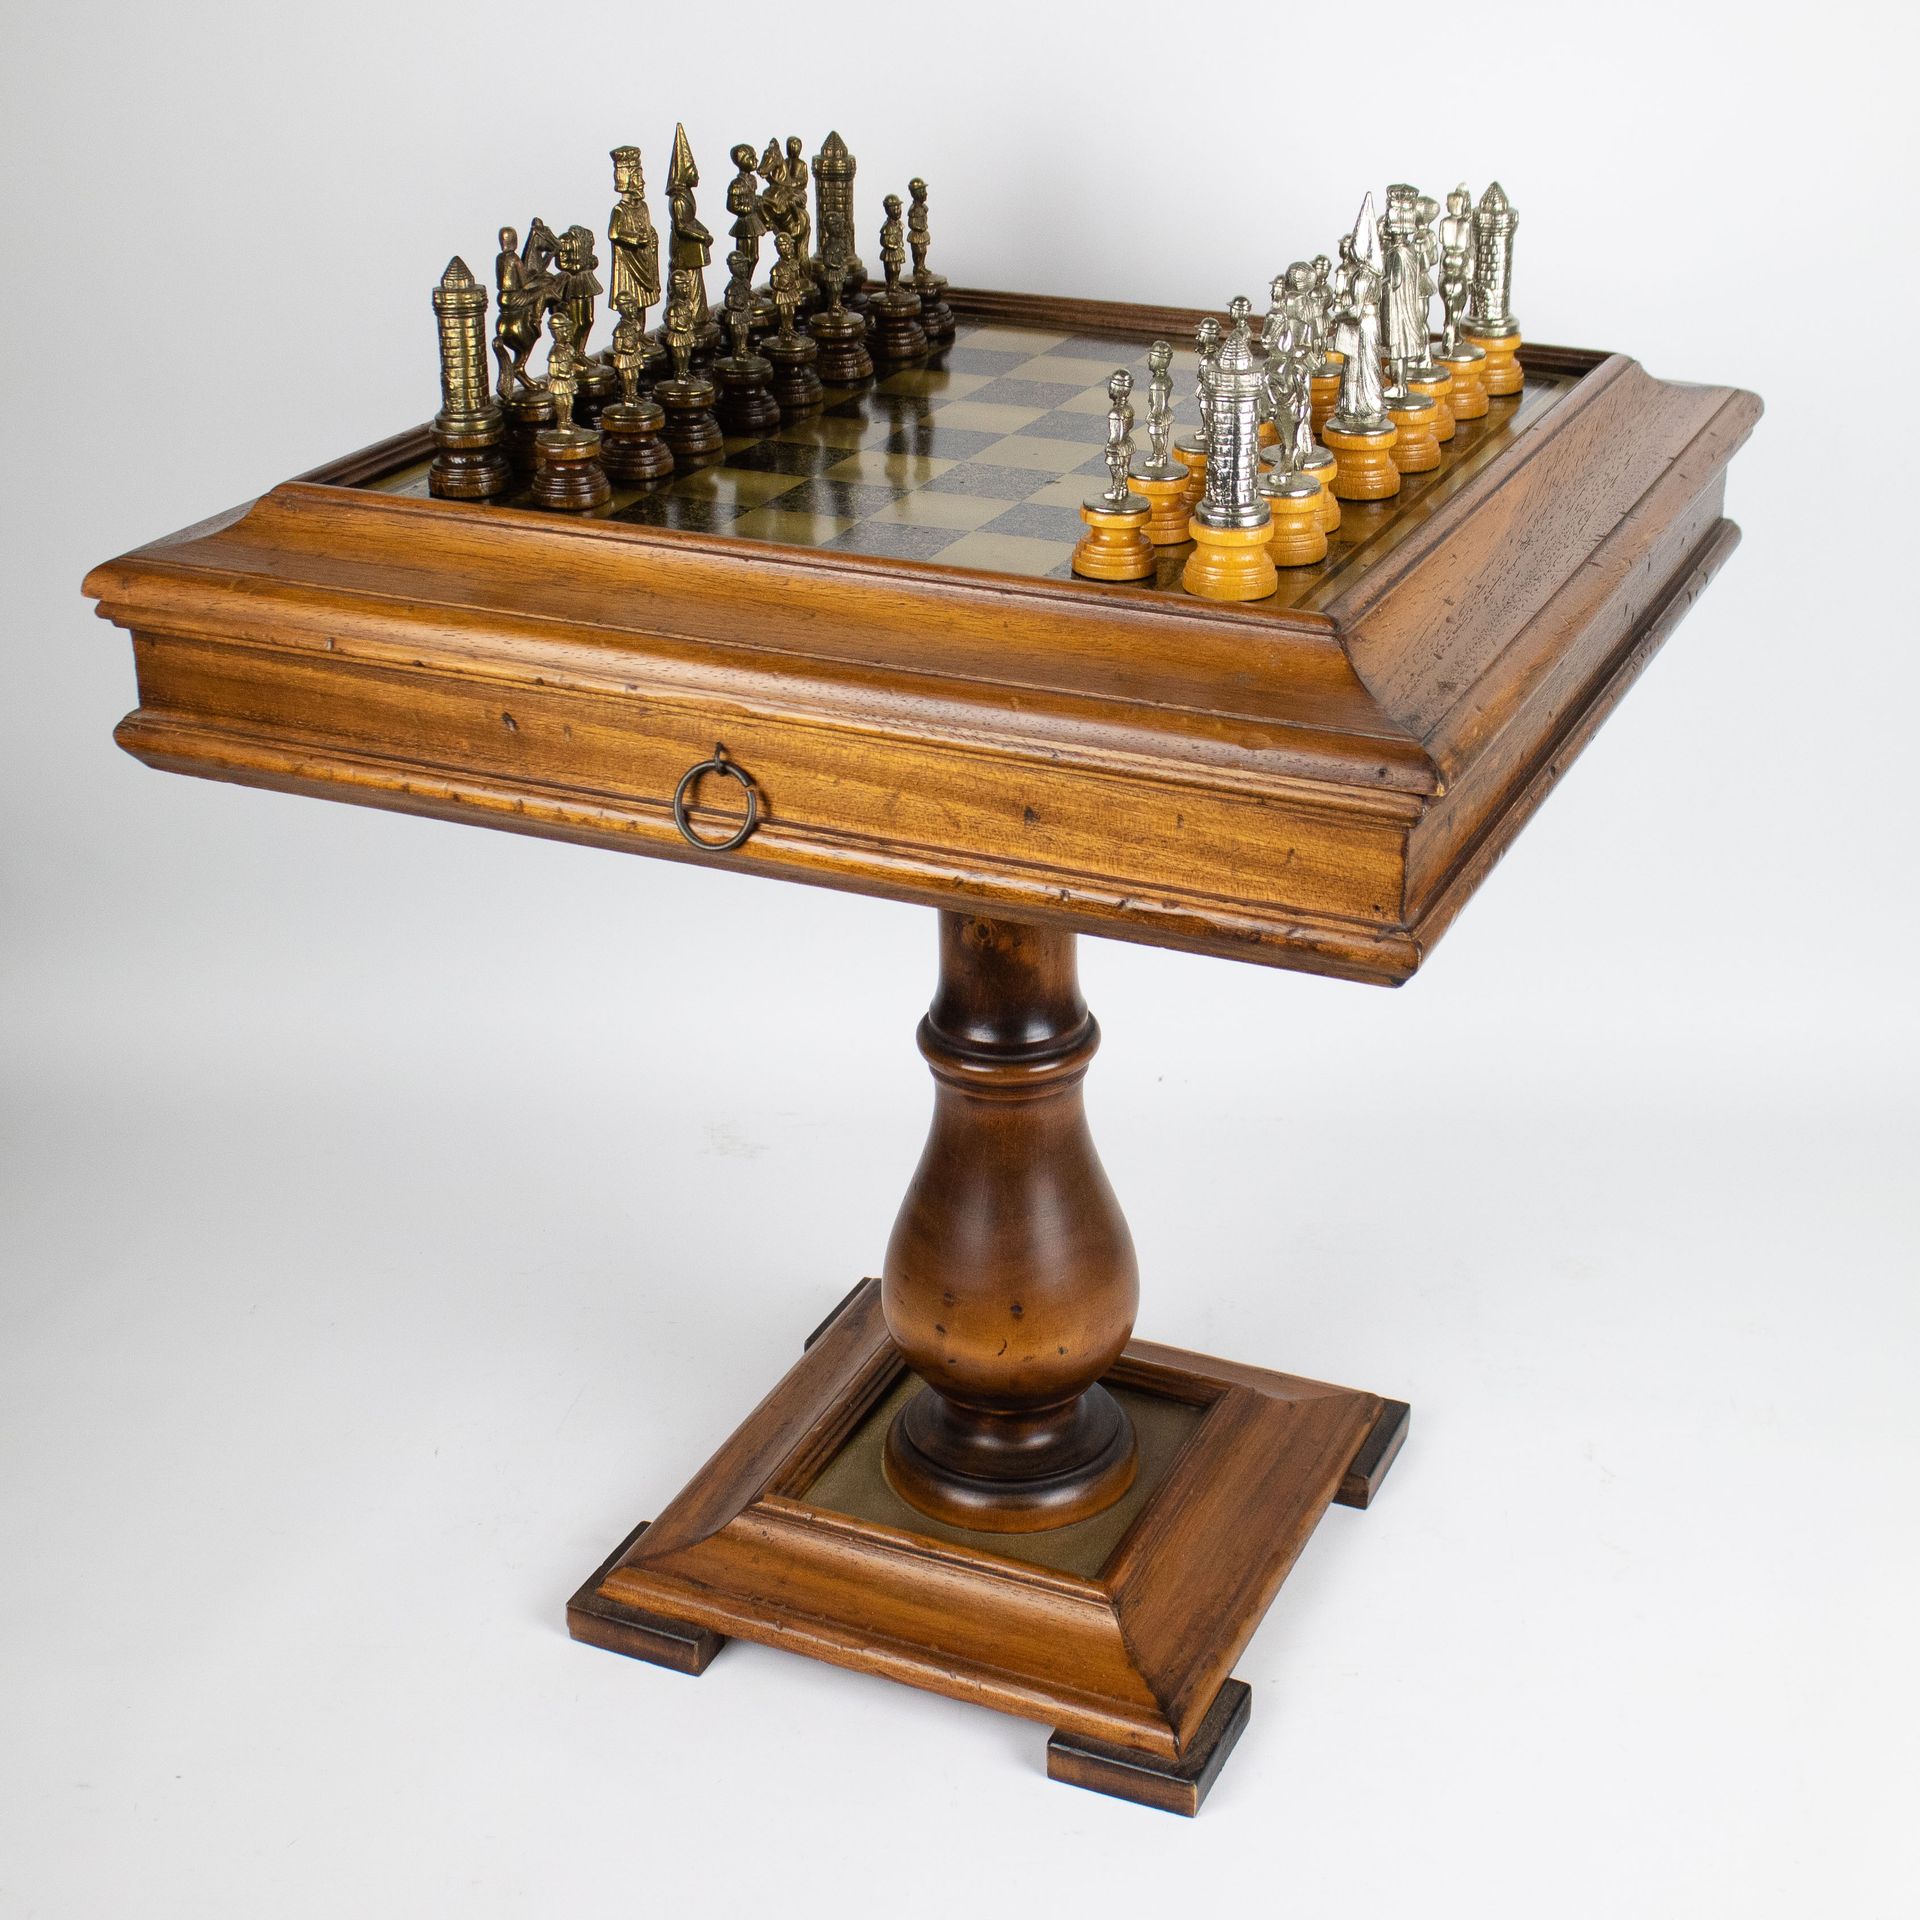 Chess table with chess game Schaaktafeltje met schaakspel. 
H 54.5